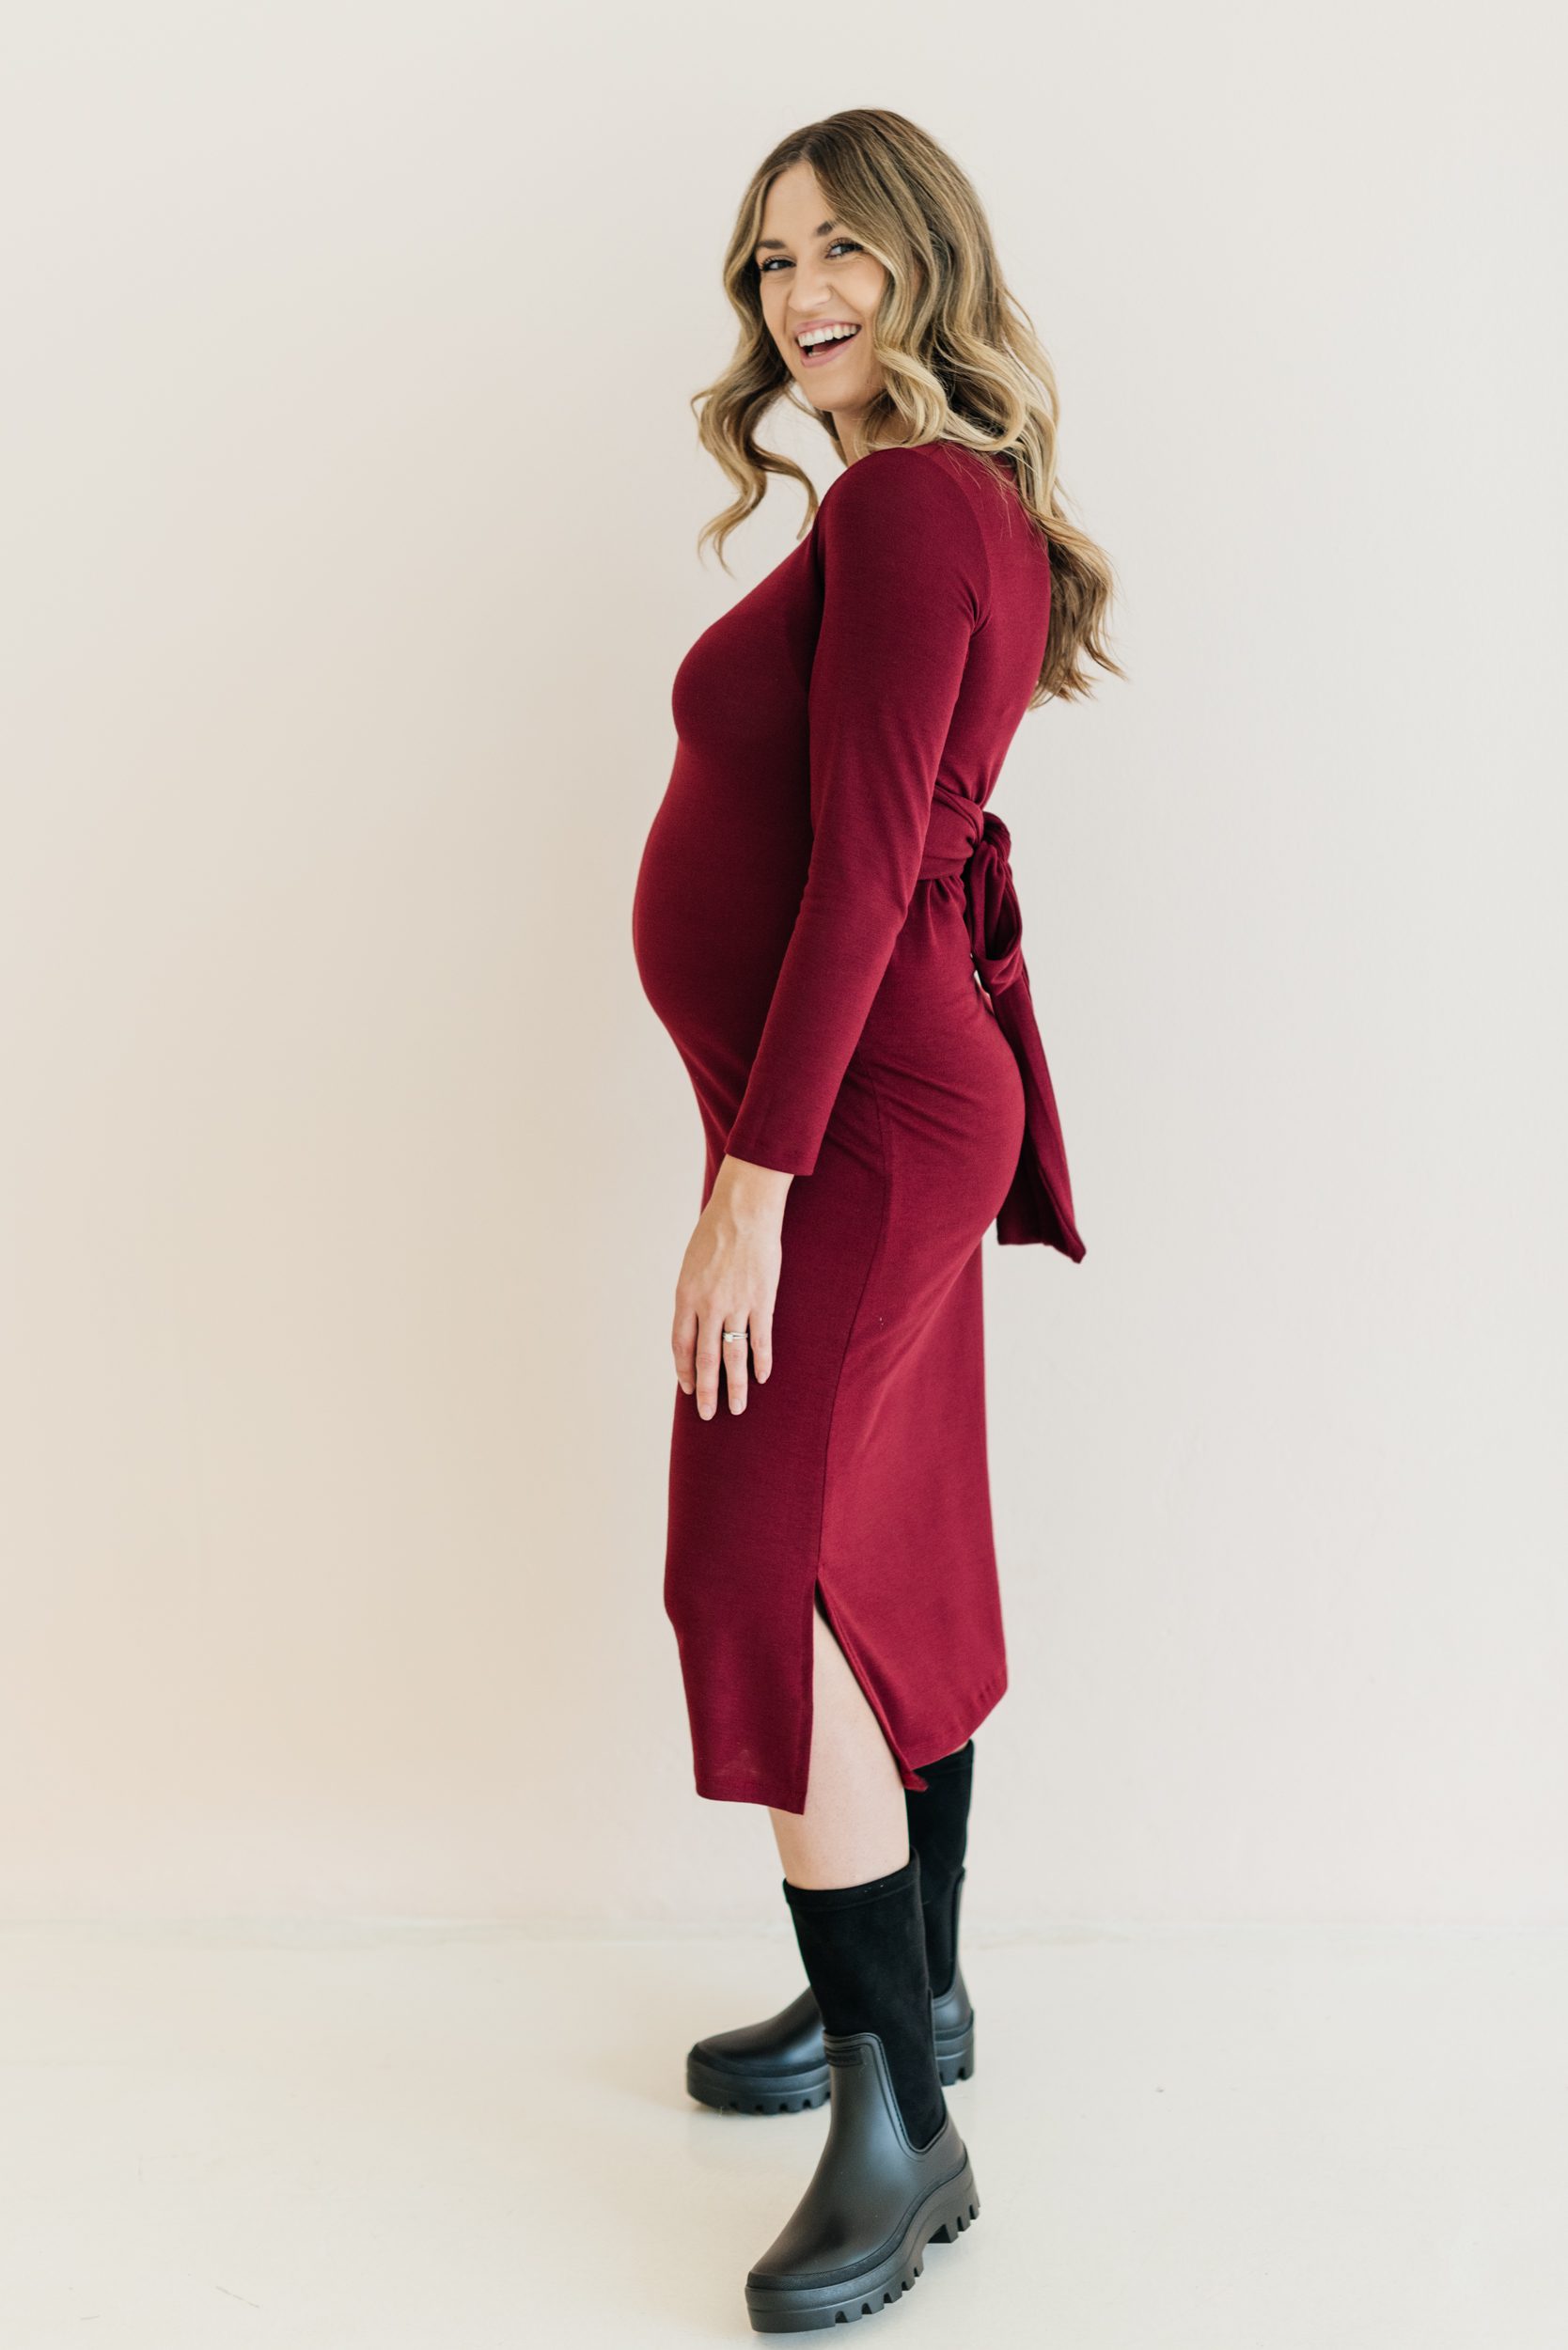 Buy Front Knit Tie Dress Maroon - Momsy Maternity, Nursing, & Womenswear